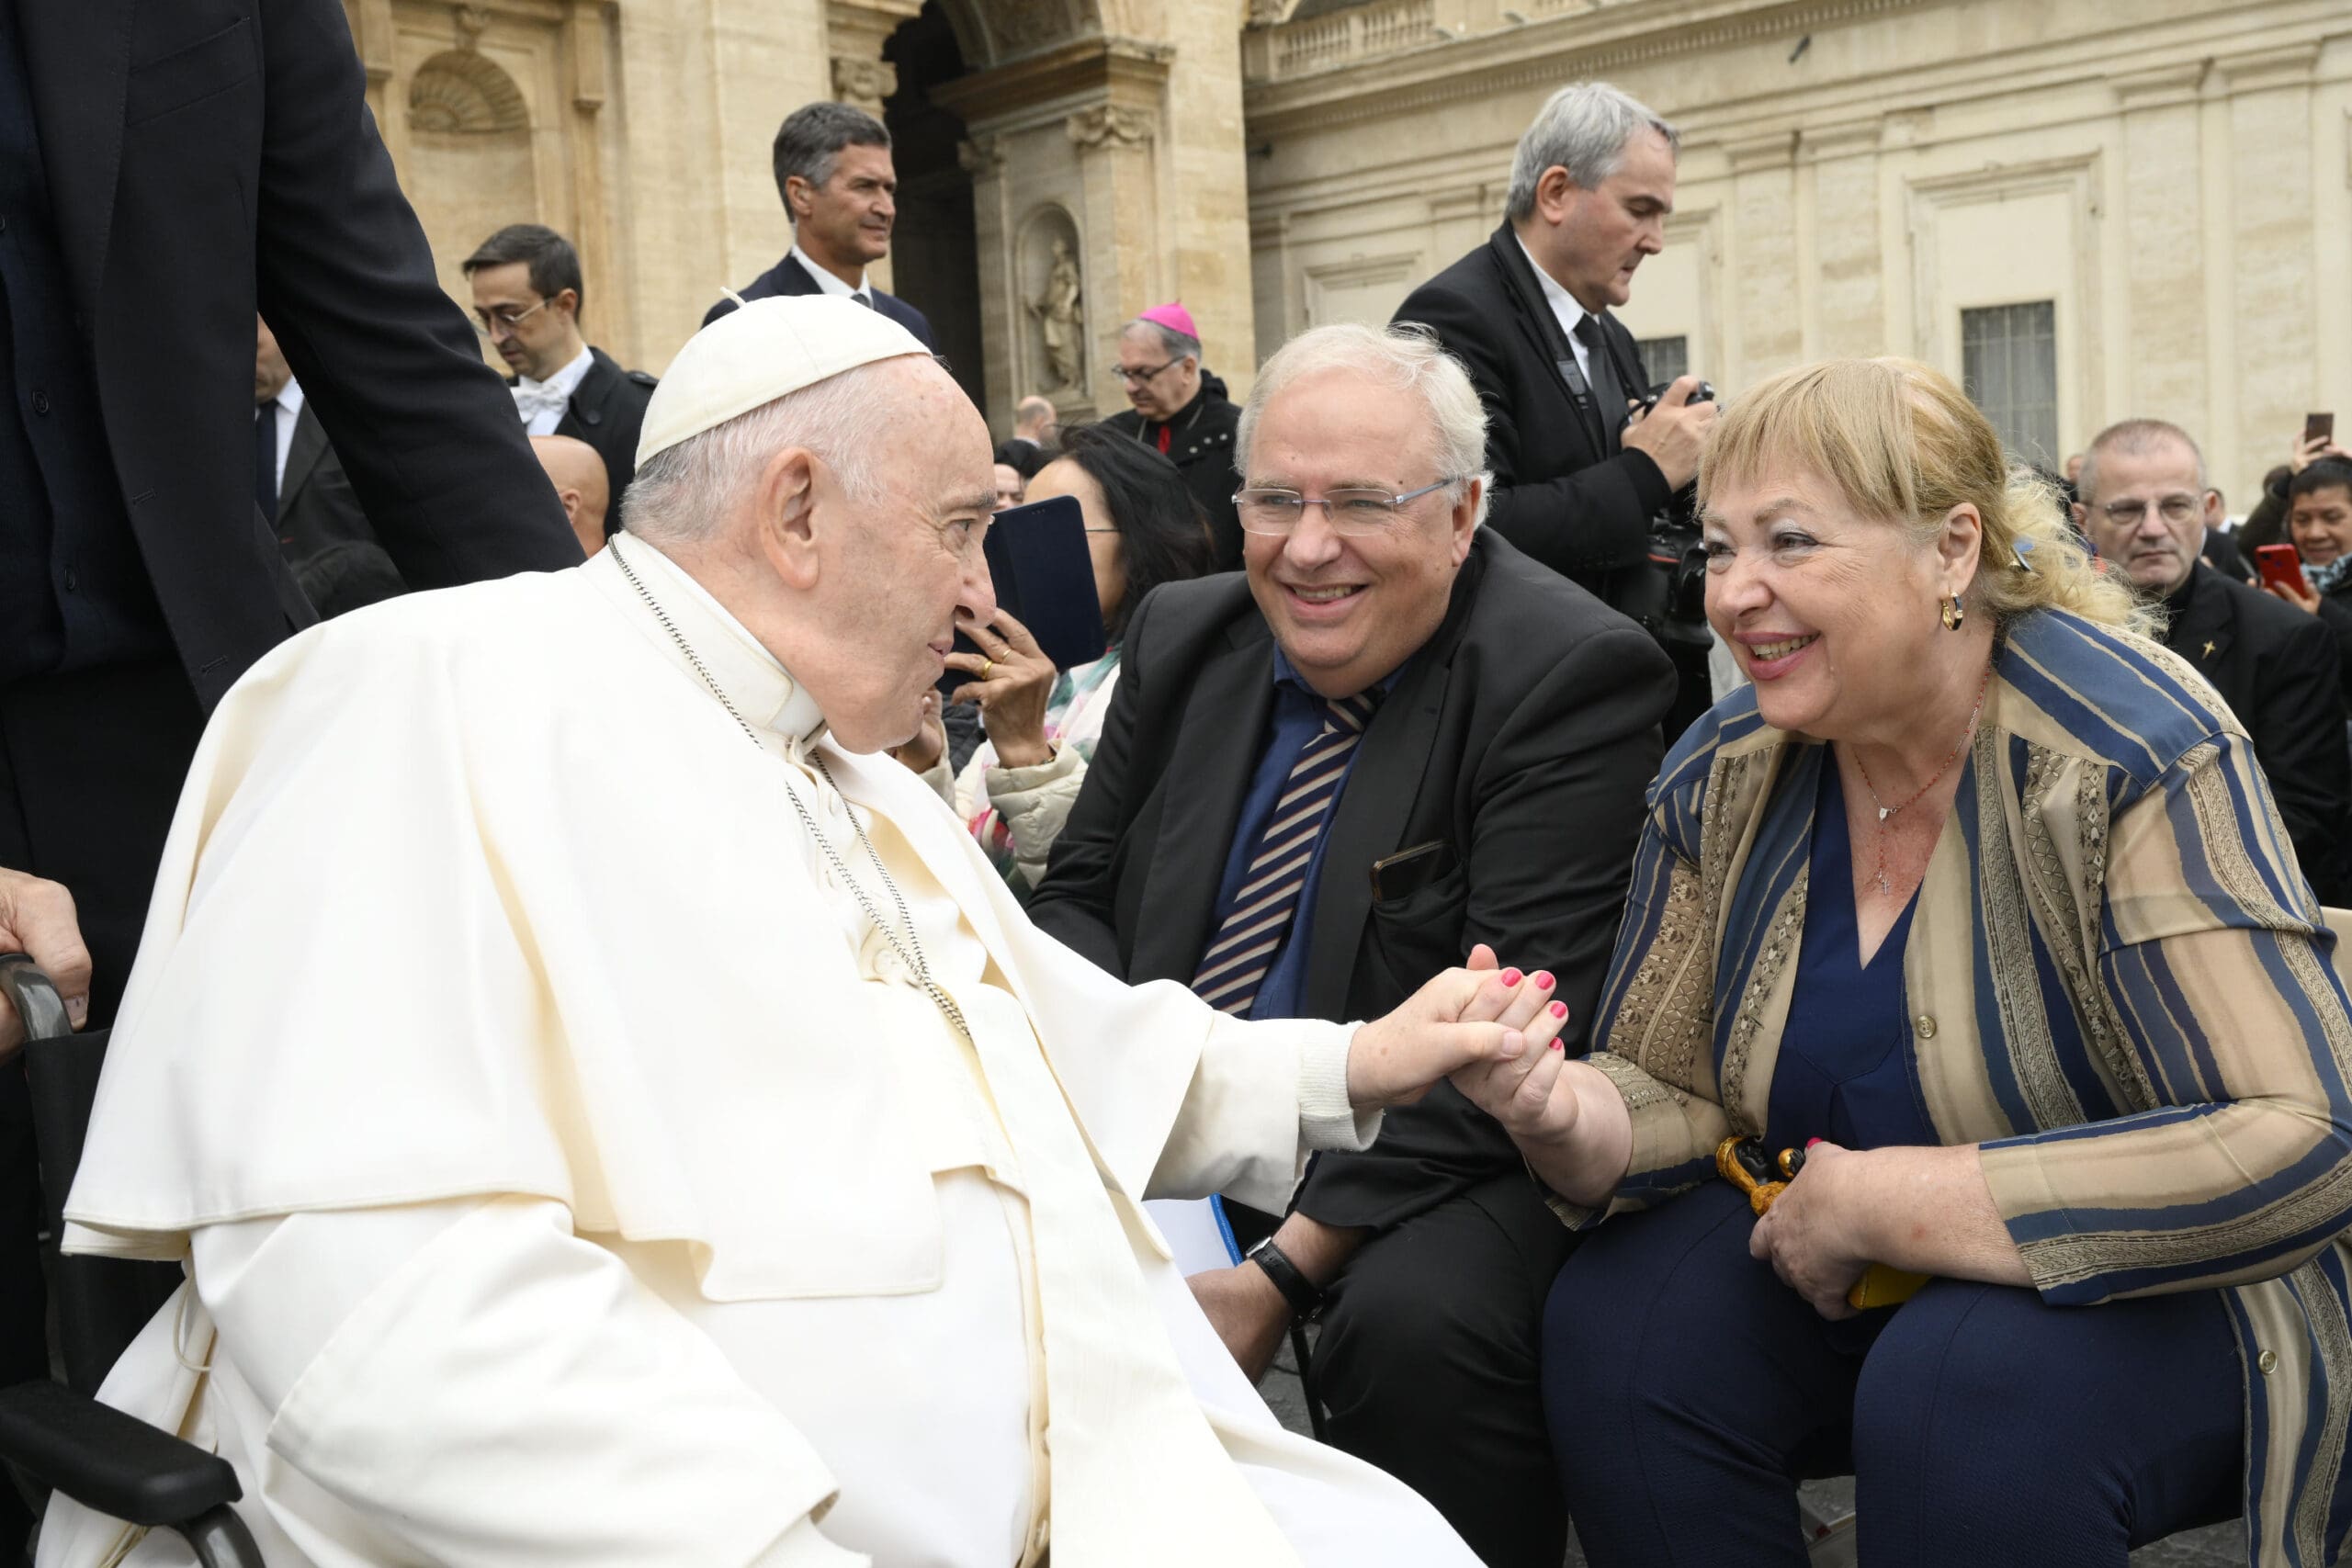 OAFI, en representación de los pacientes con artrosis, es recibida en el Vaticano